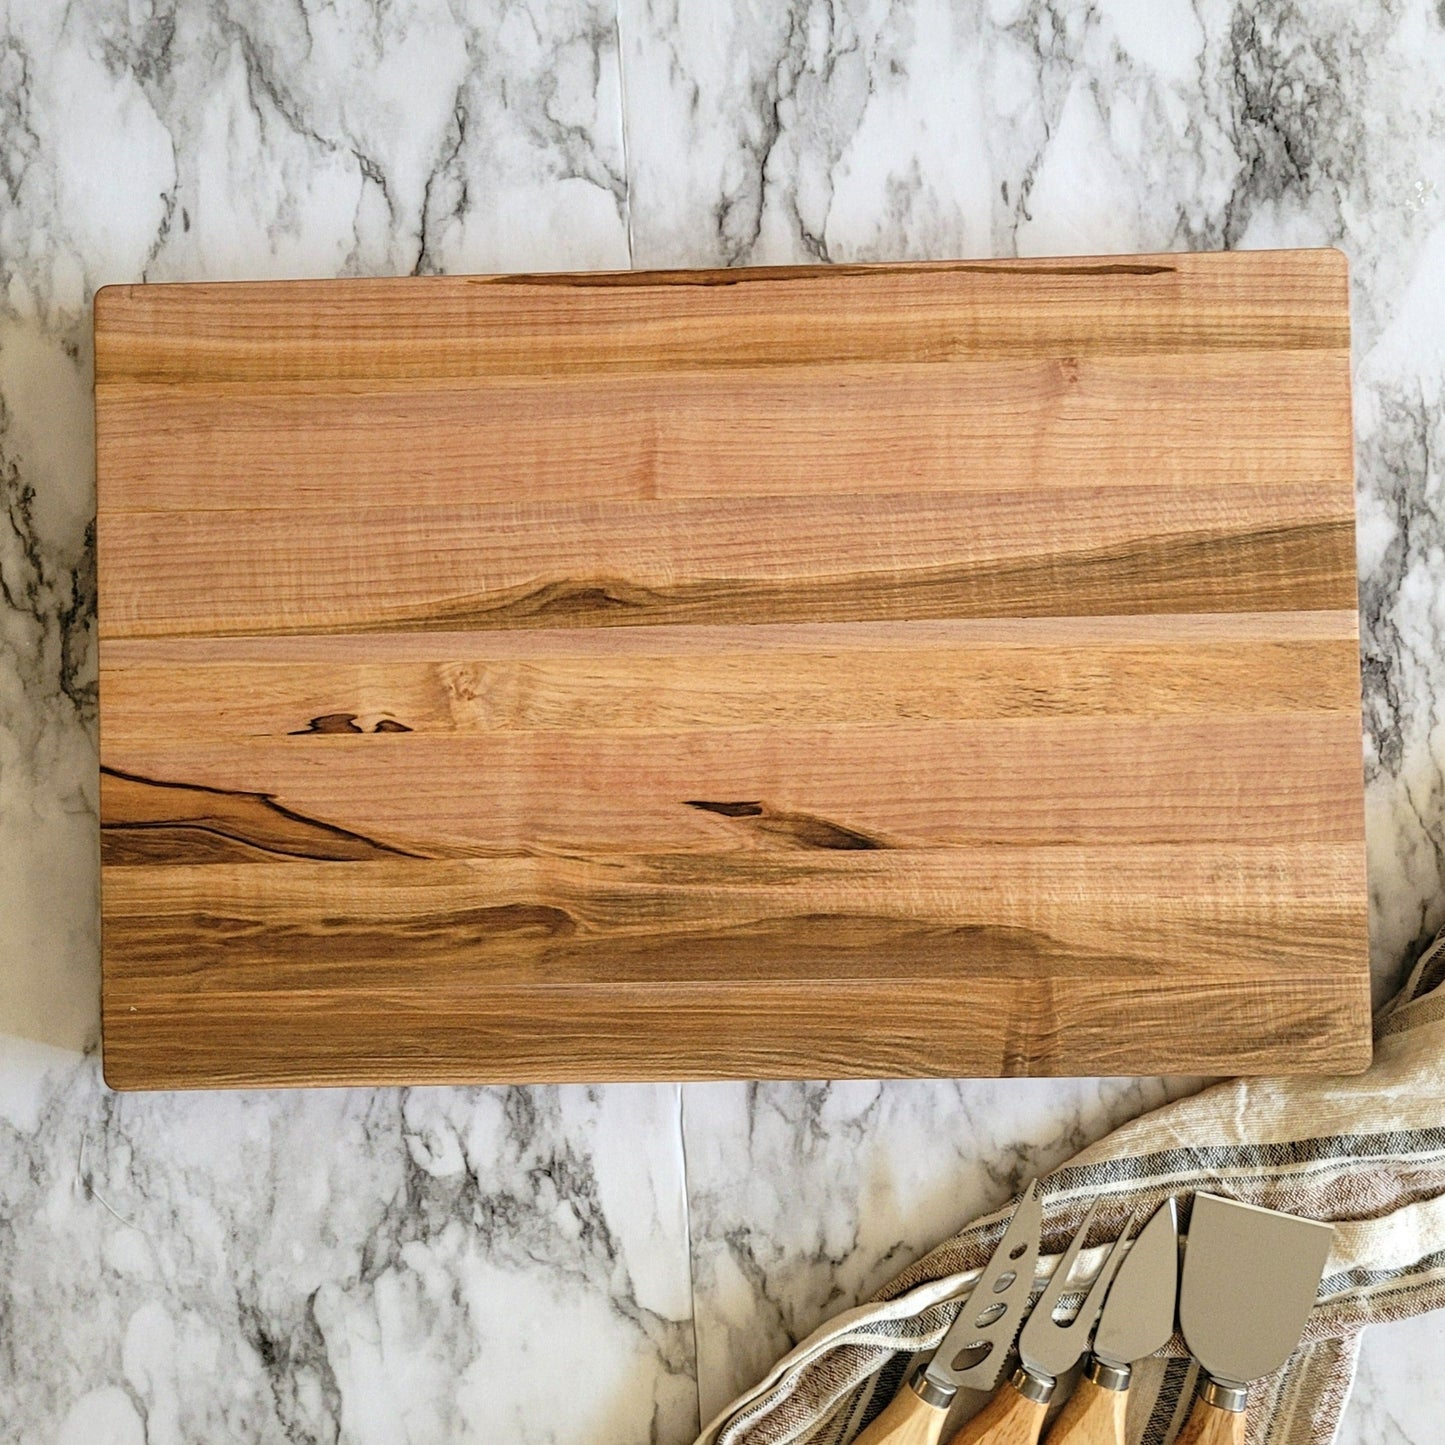 maple wood cutting board